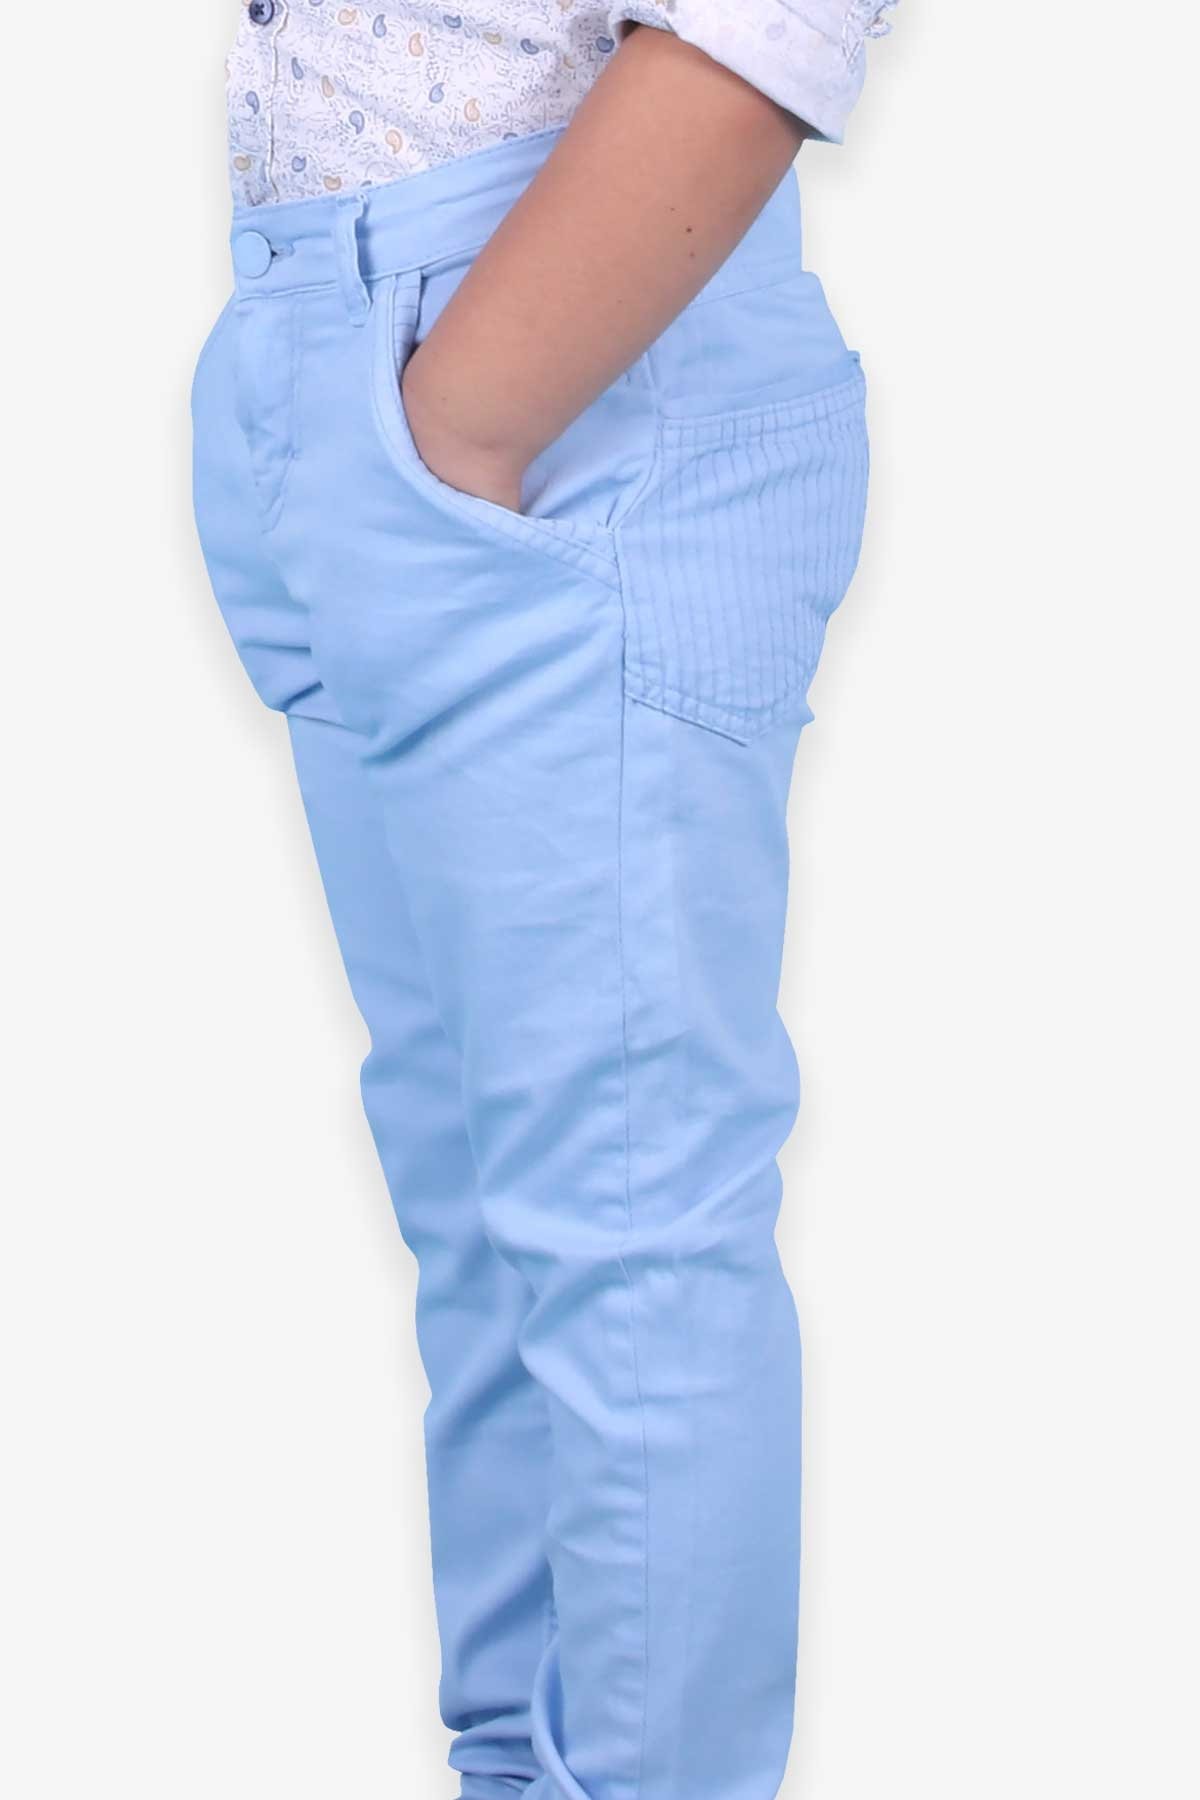 Erkek Çocuk Gabardin Pantolon Basic Buz Mavisi 12 Yaş - Breeze